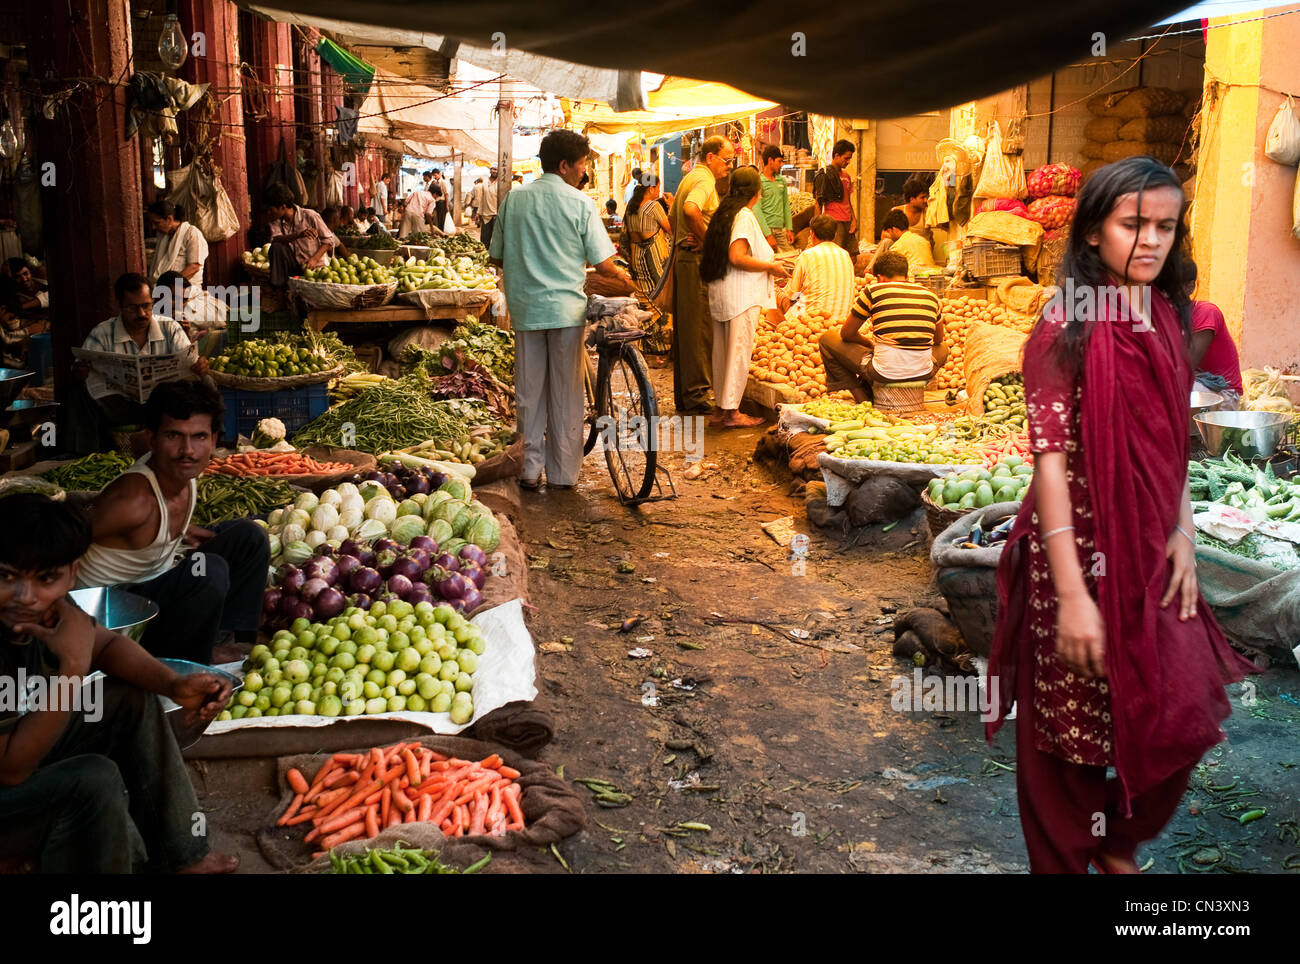 Ein lebhafter Markt in Indien Stockfoto